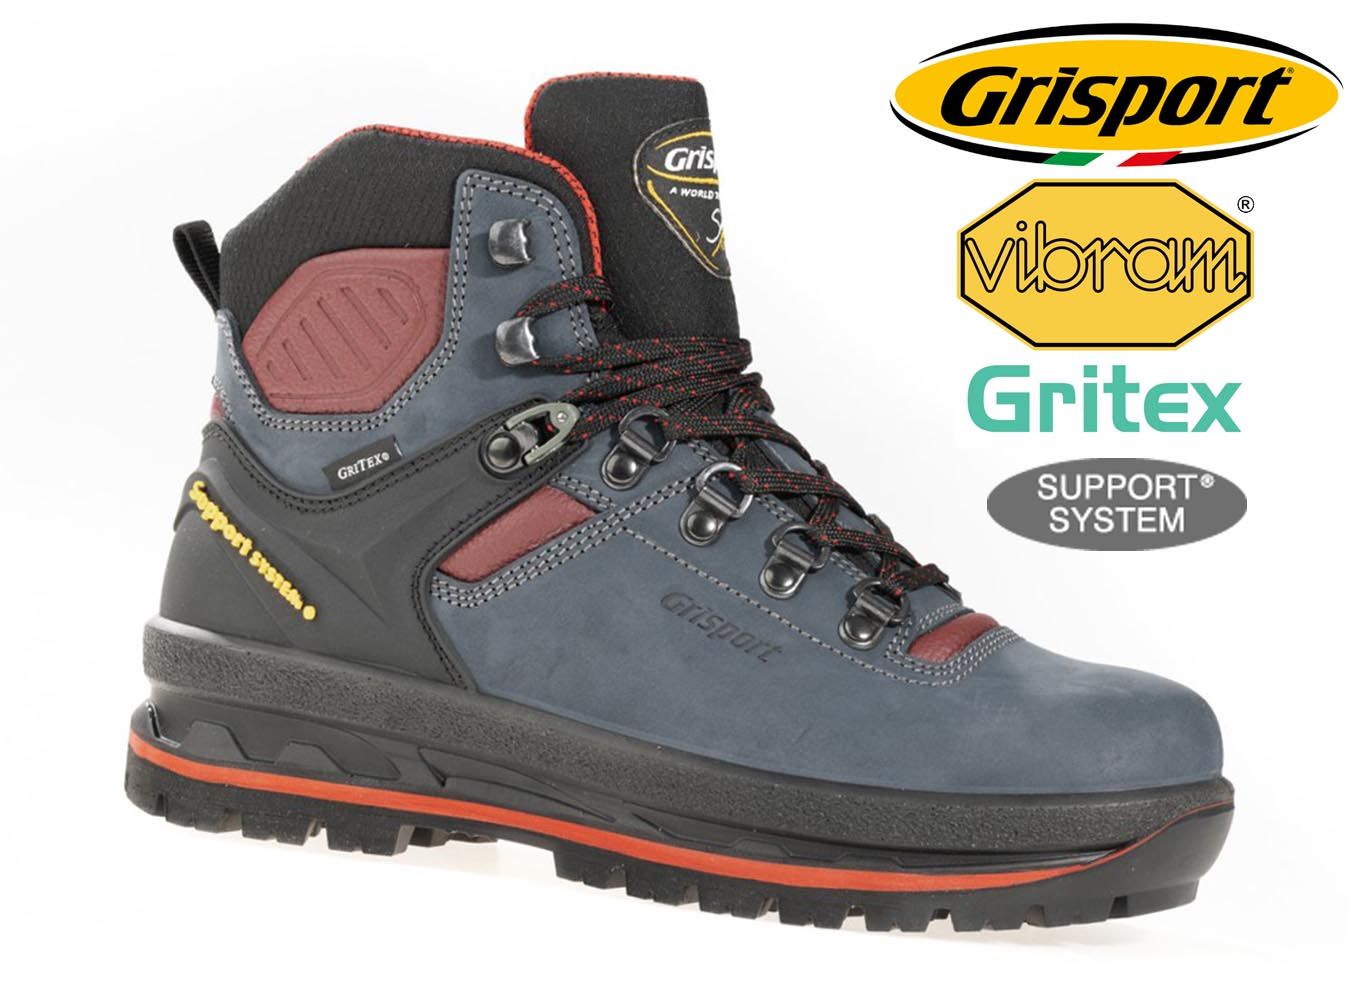 Outdoorix - Grisport Glide 90 dámské trekové boty